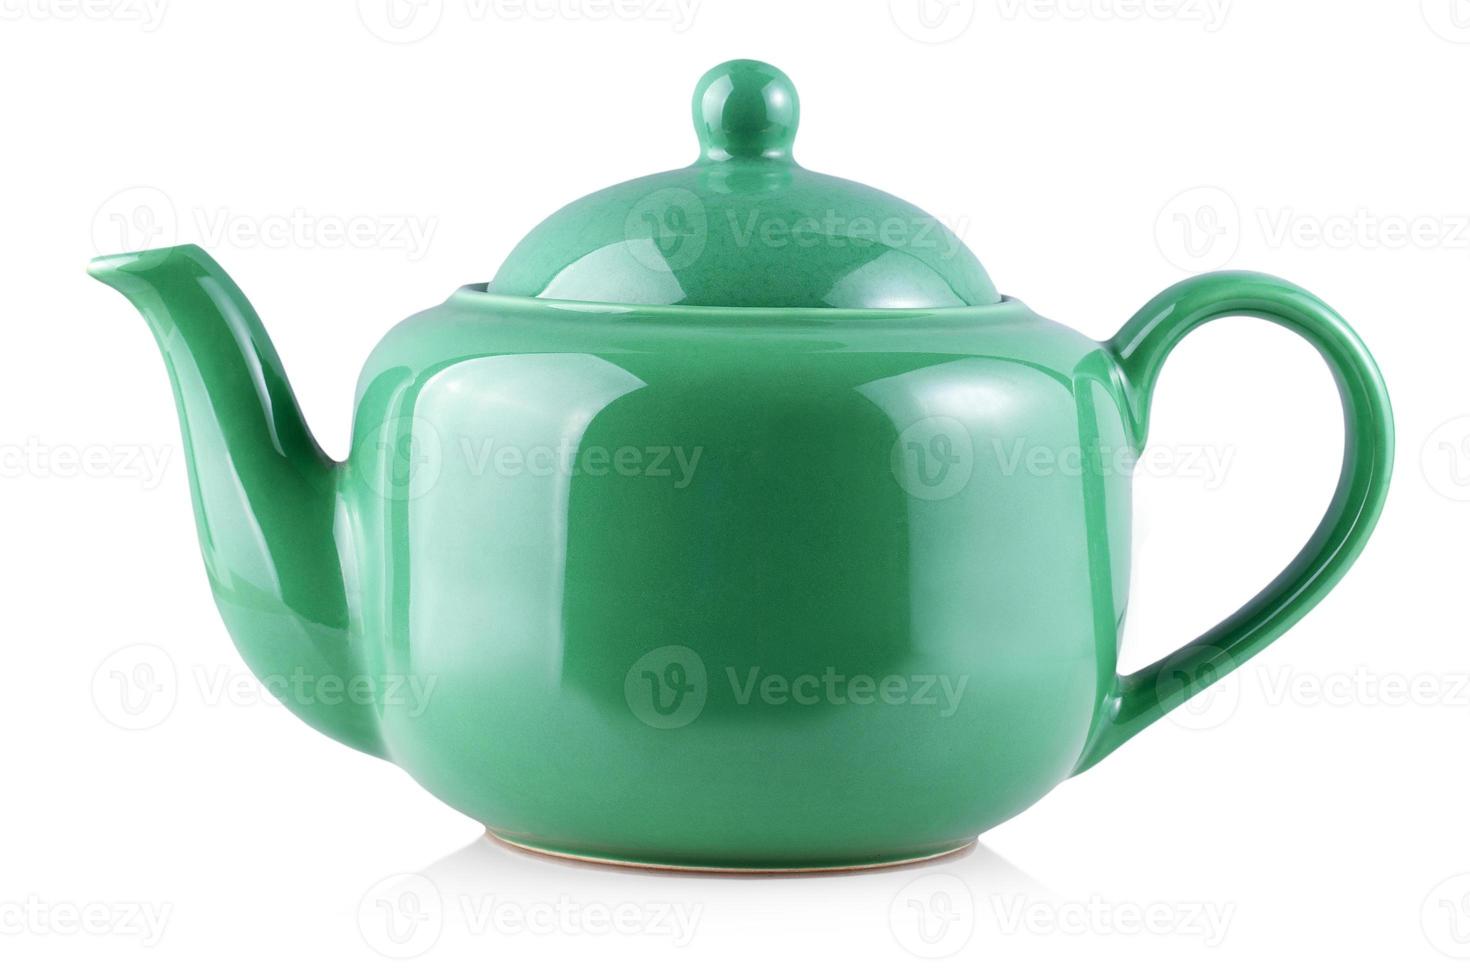 die grüne Teekanne Wasserkocher isoliert auf weißem Hintergrund foto